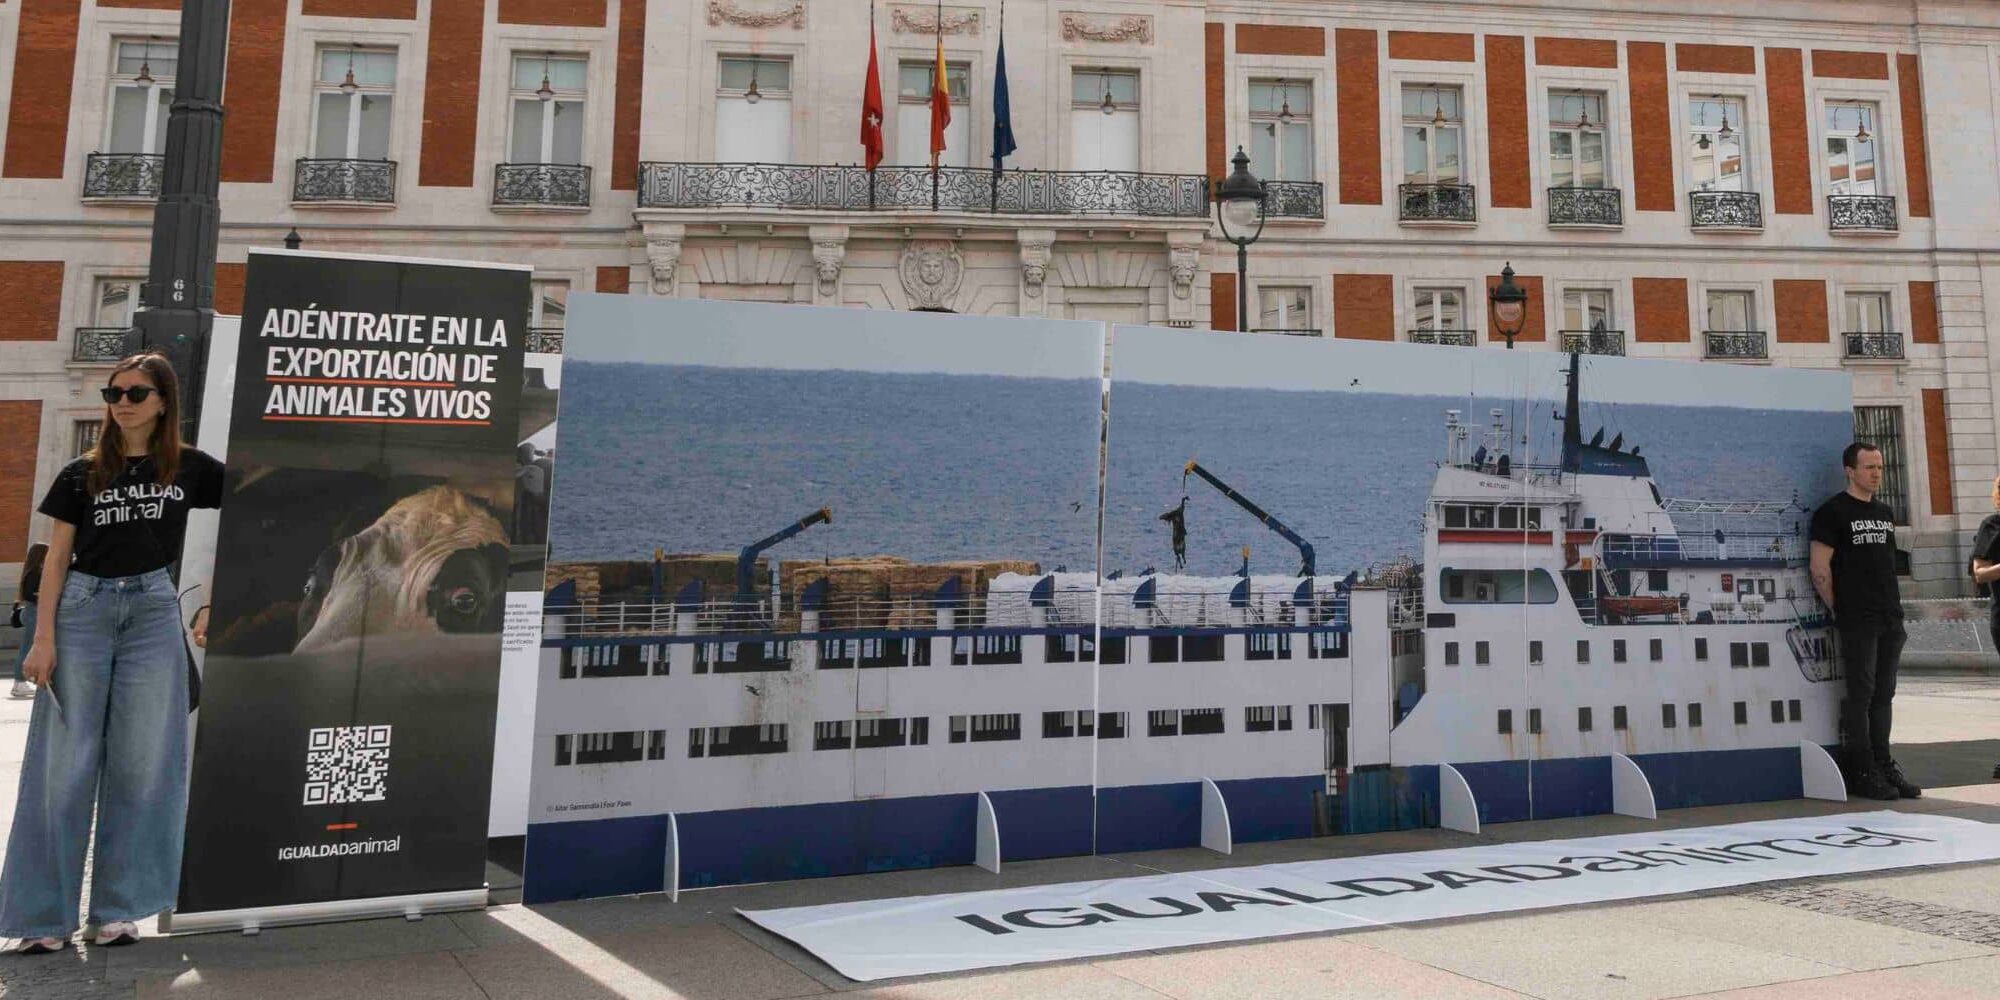 Réplica del buque Elbeik instalada por Igualdad Animal en la Puerta del Sol.